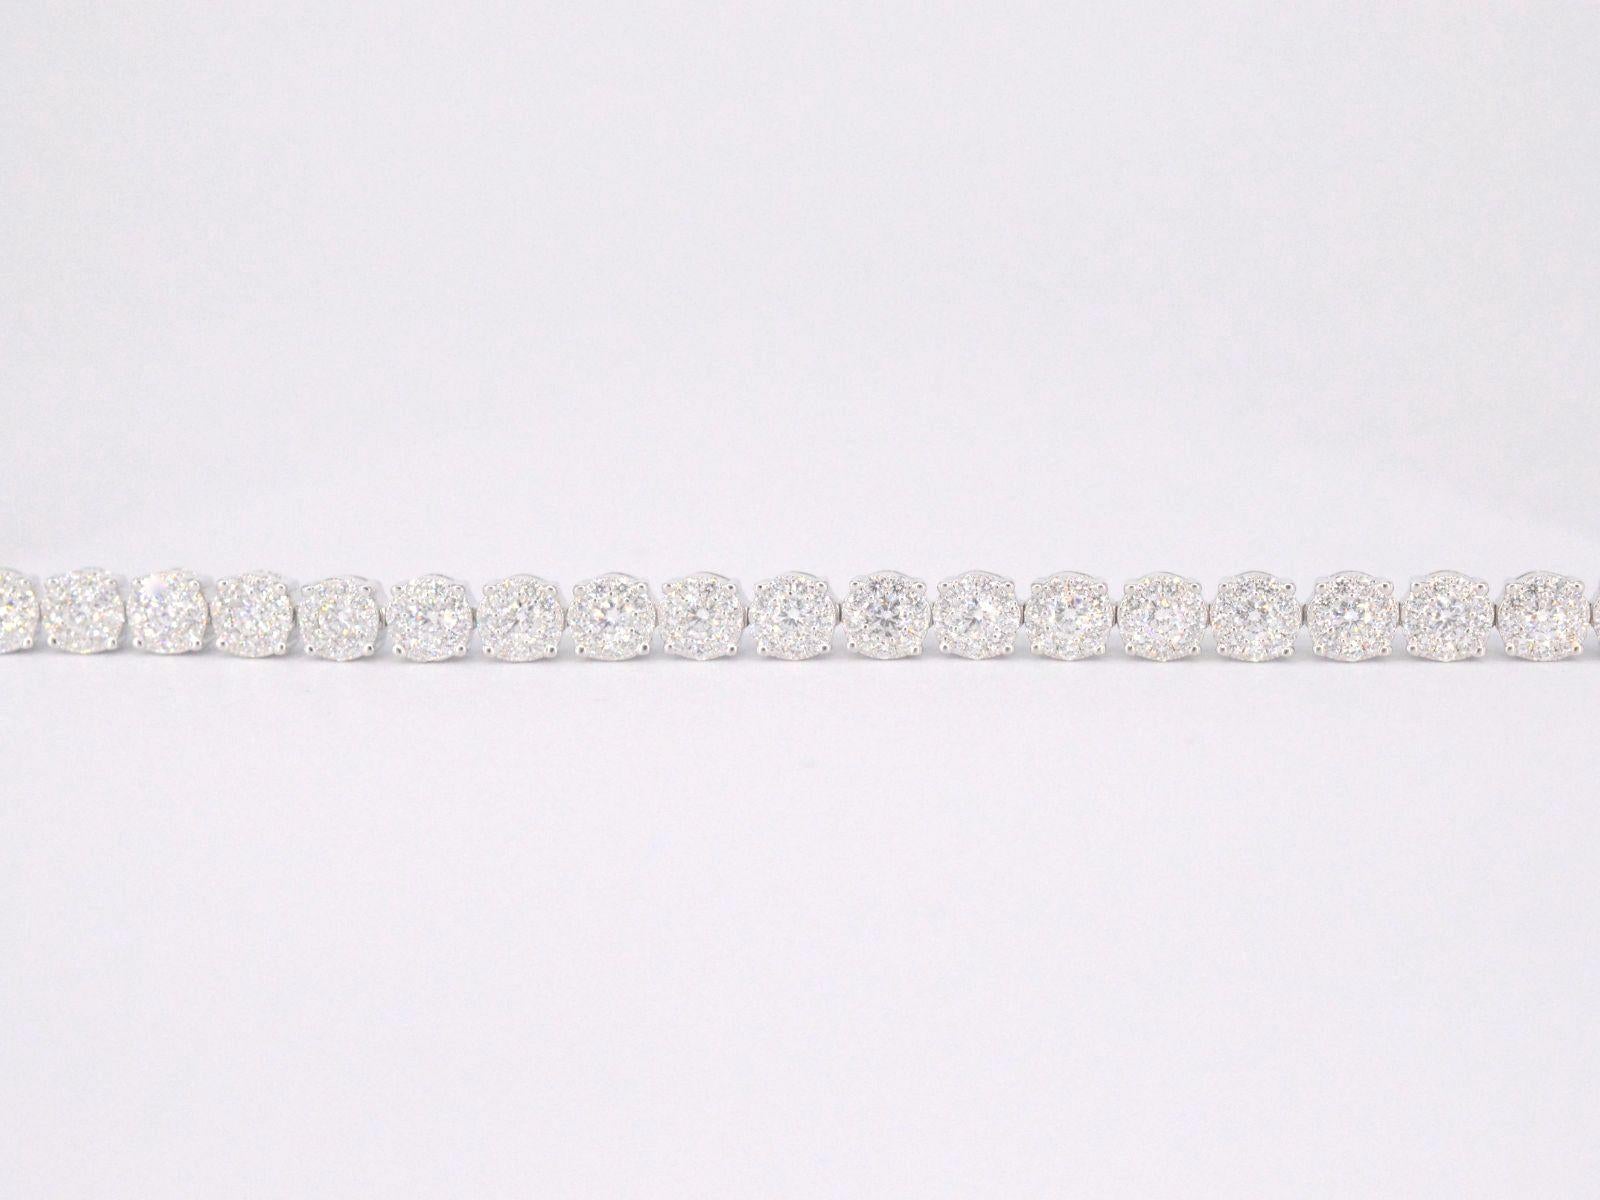 Brilliant Cut White gold tennis bracelet with 5.00 carat diamonds For Sale